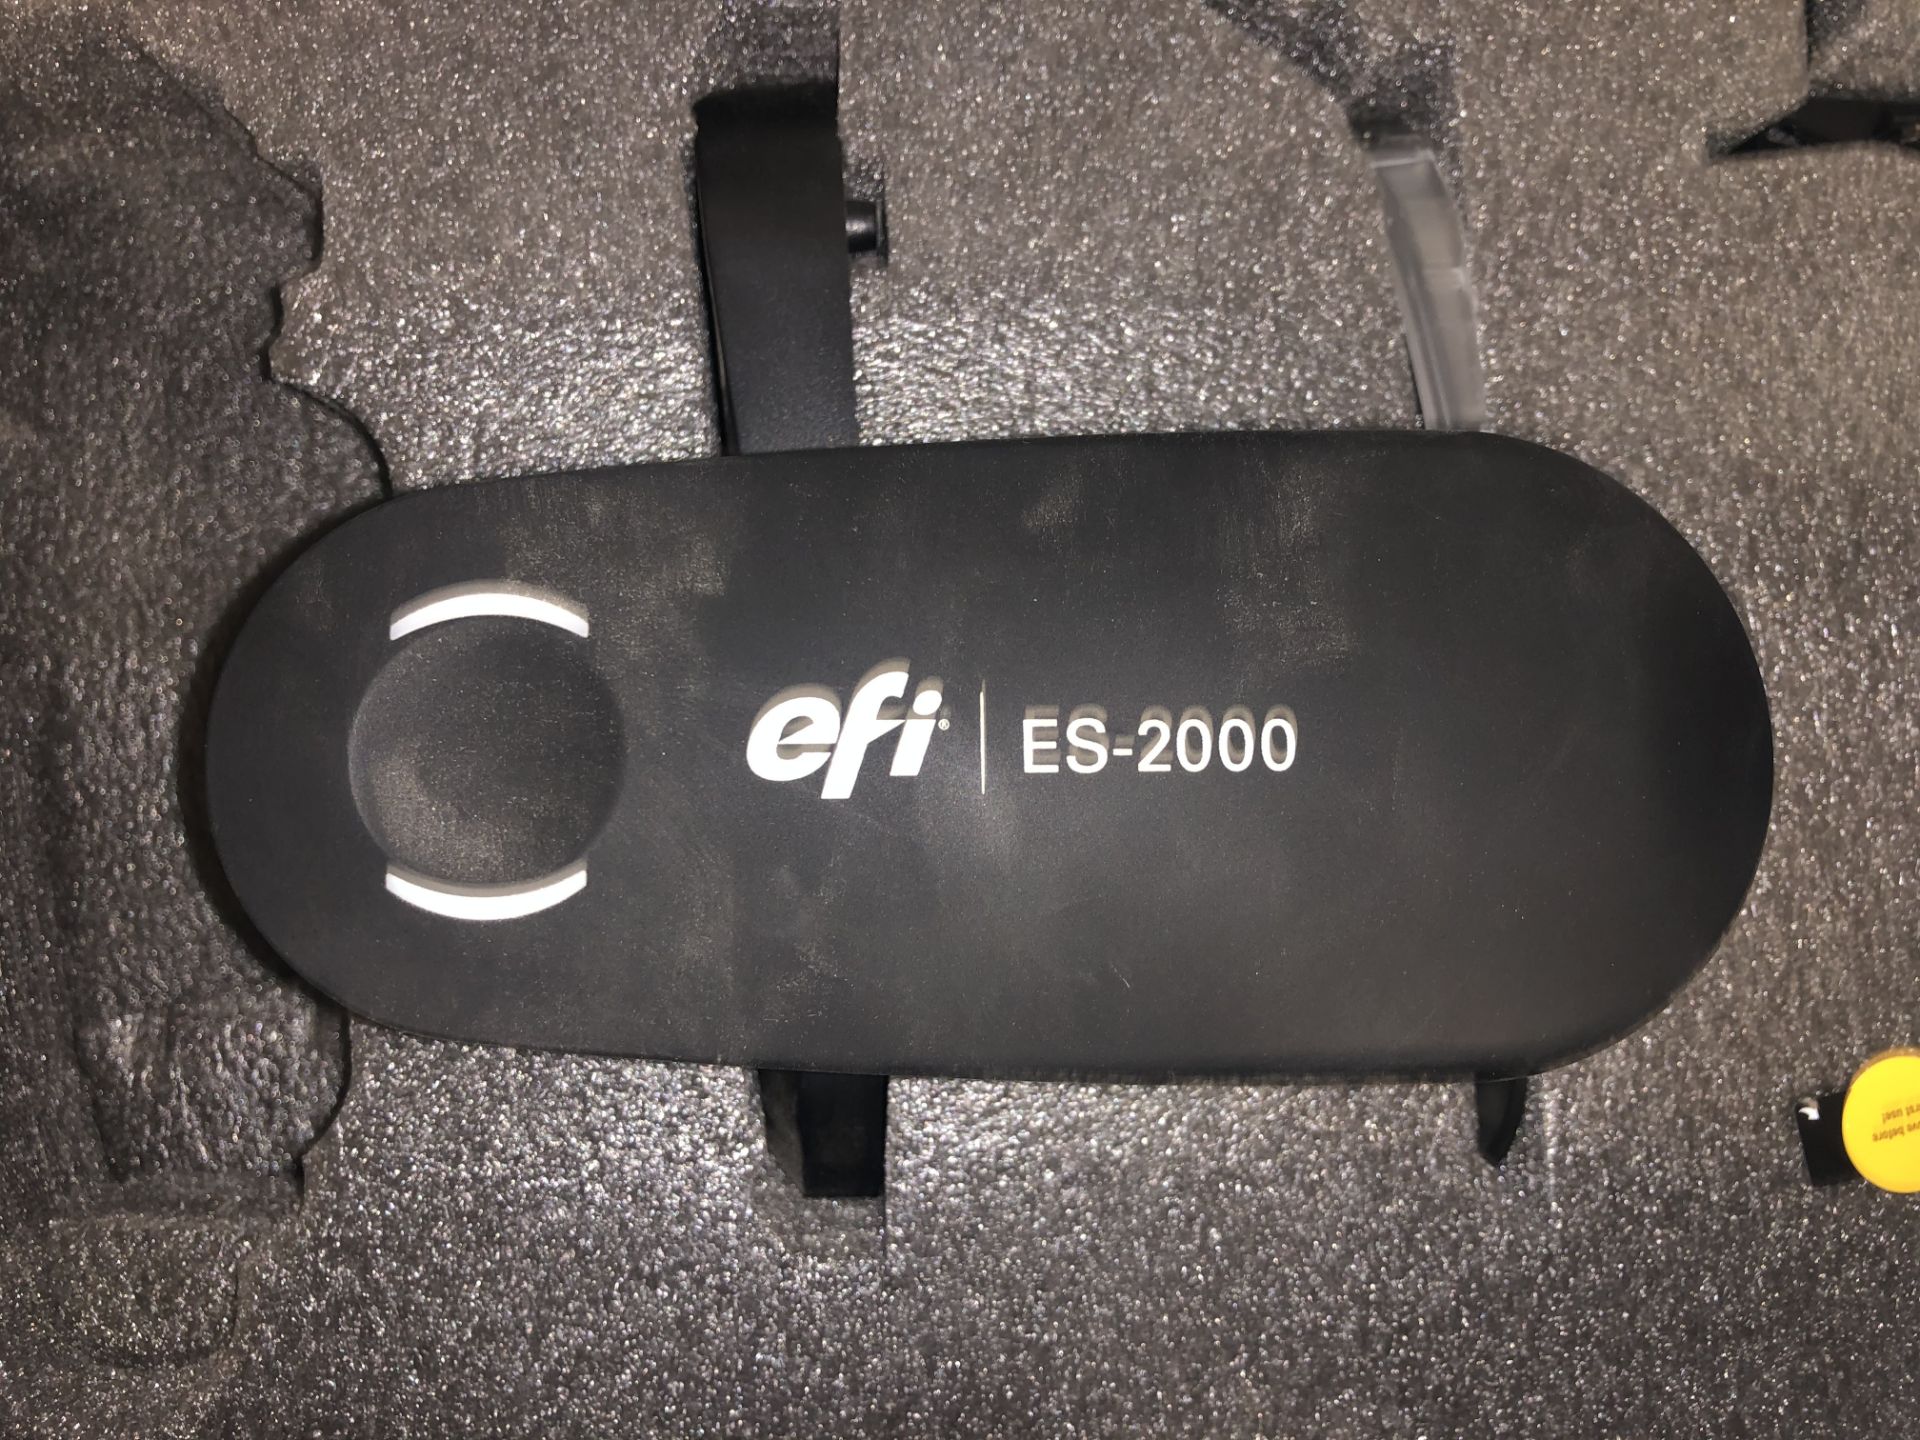 EFI ES-2000 Spectrophotometer in Case - Image 2 of 4